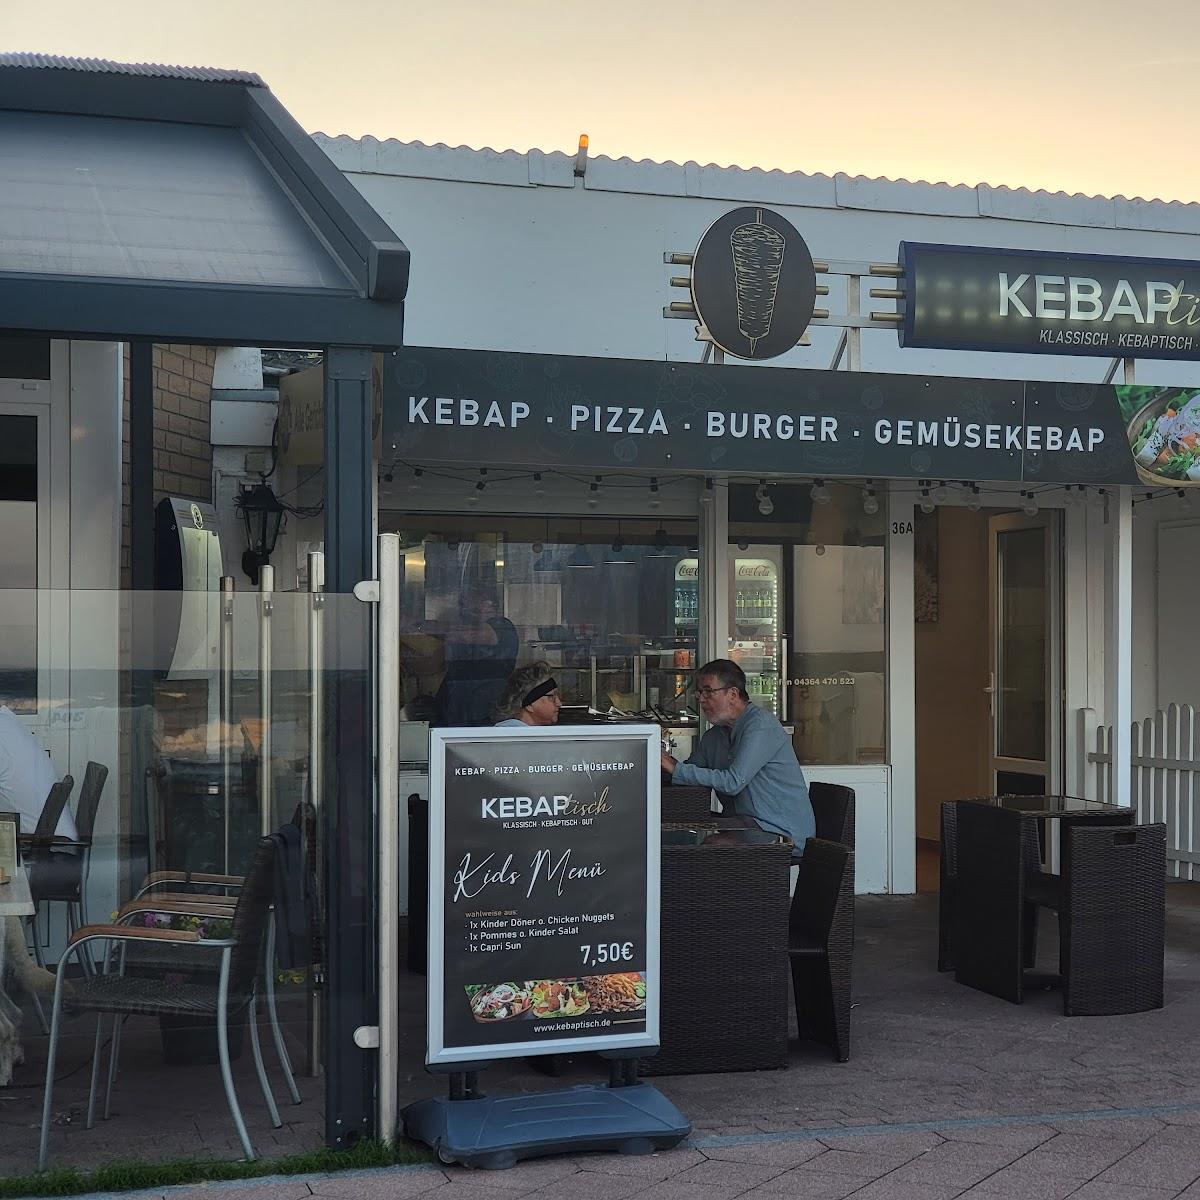 Restaurant "Kebaptisch" in Dahme